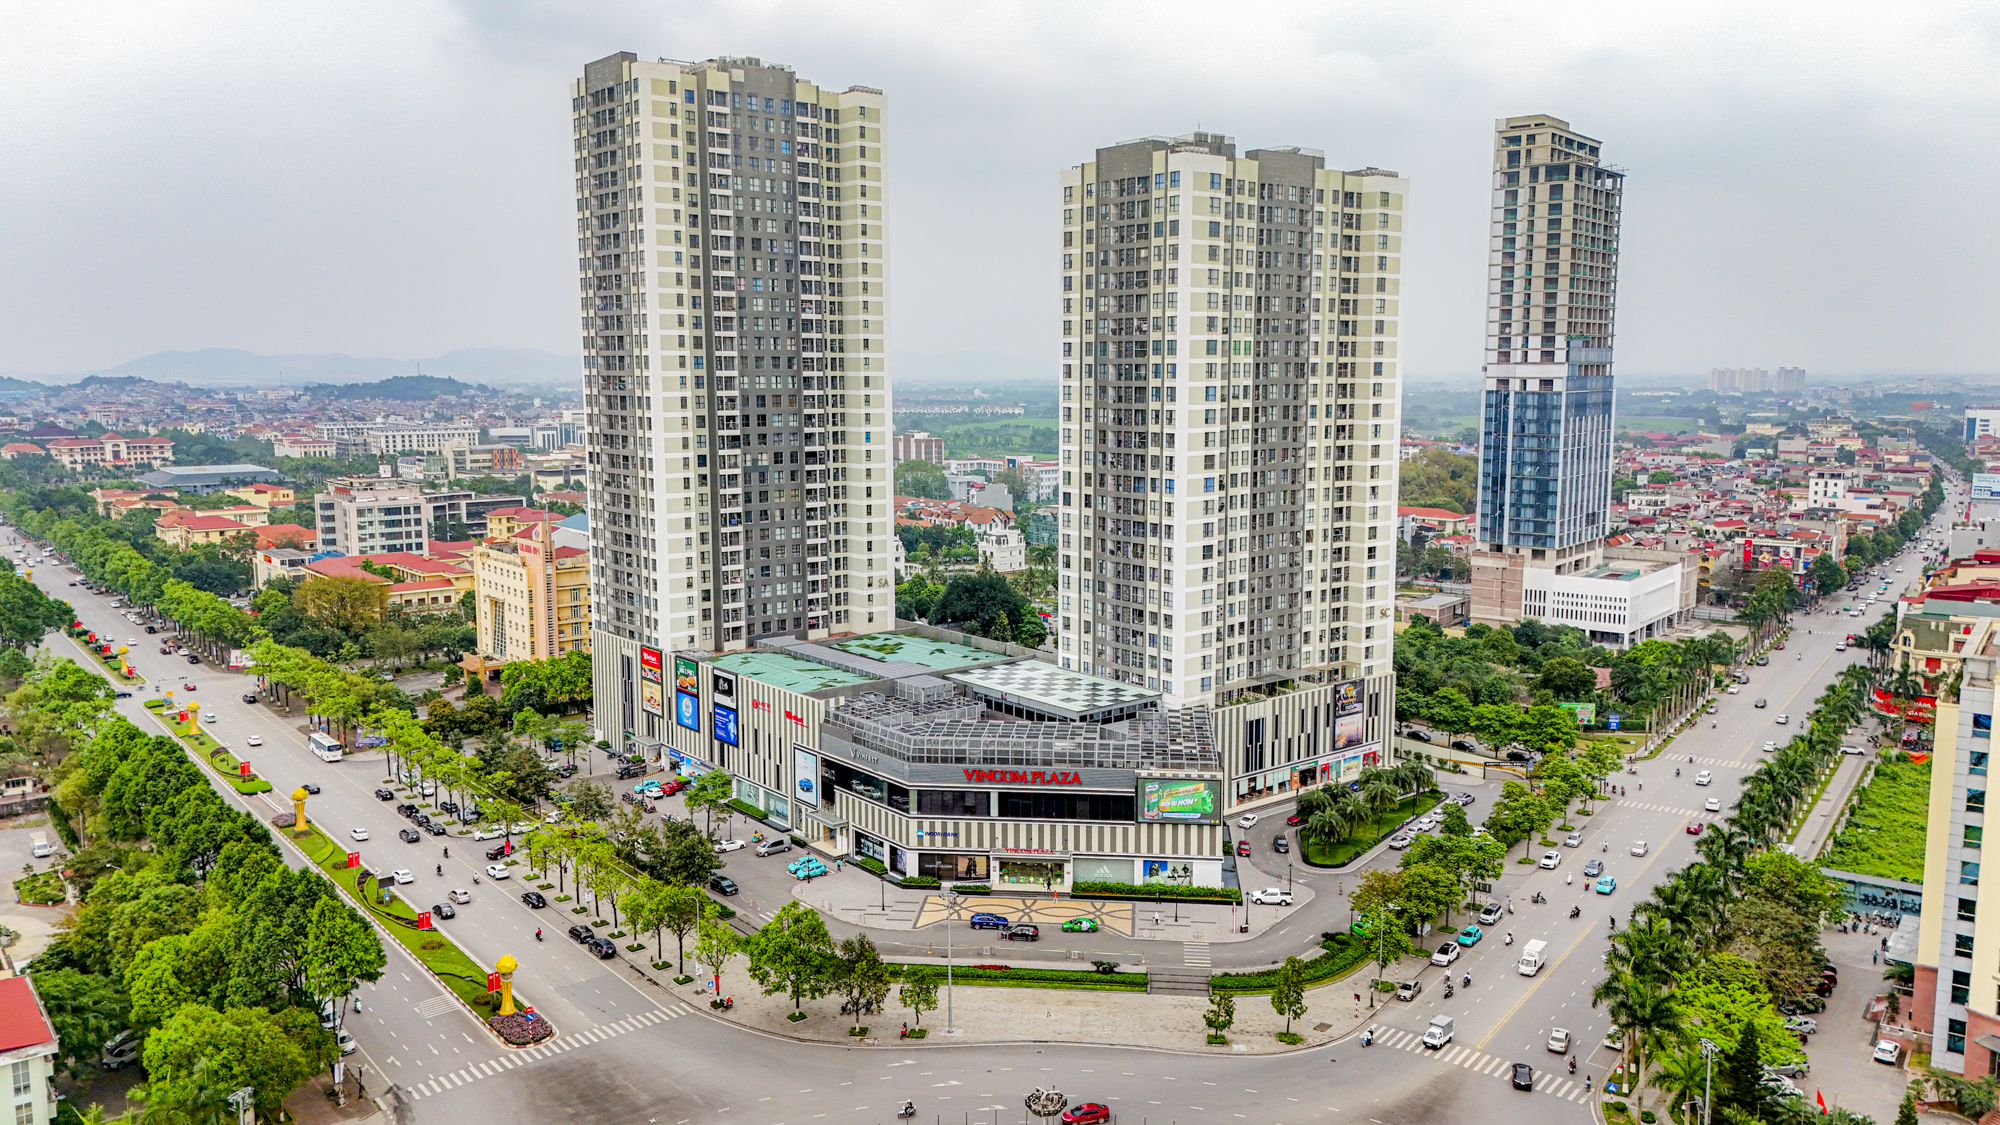 Khu vực trung tâm của trung tâm tỉnh sắp lên thành phố: Có khu hành chính độc đáo bậc nhất Việt Nam; Vingroup, Vietcombank phô diễn vị thế- Ảnh 3.